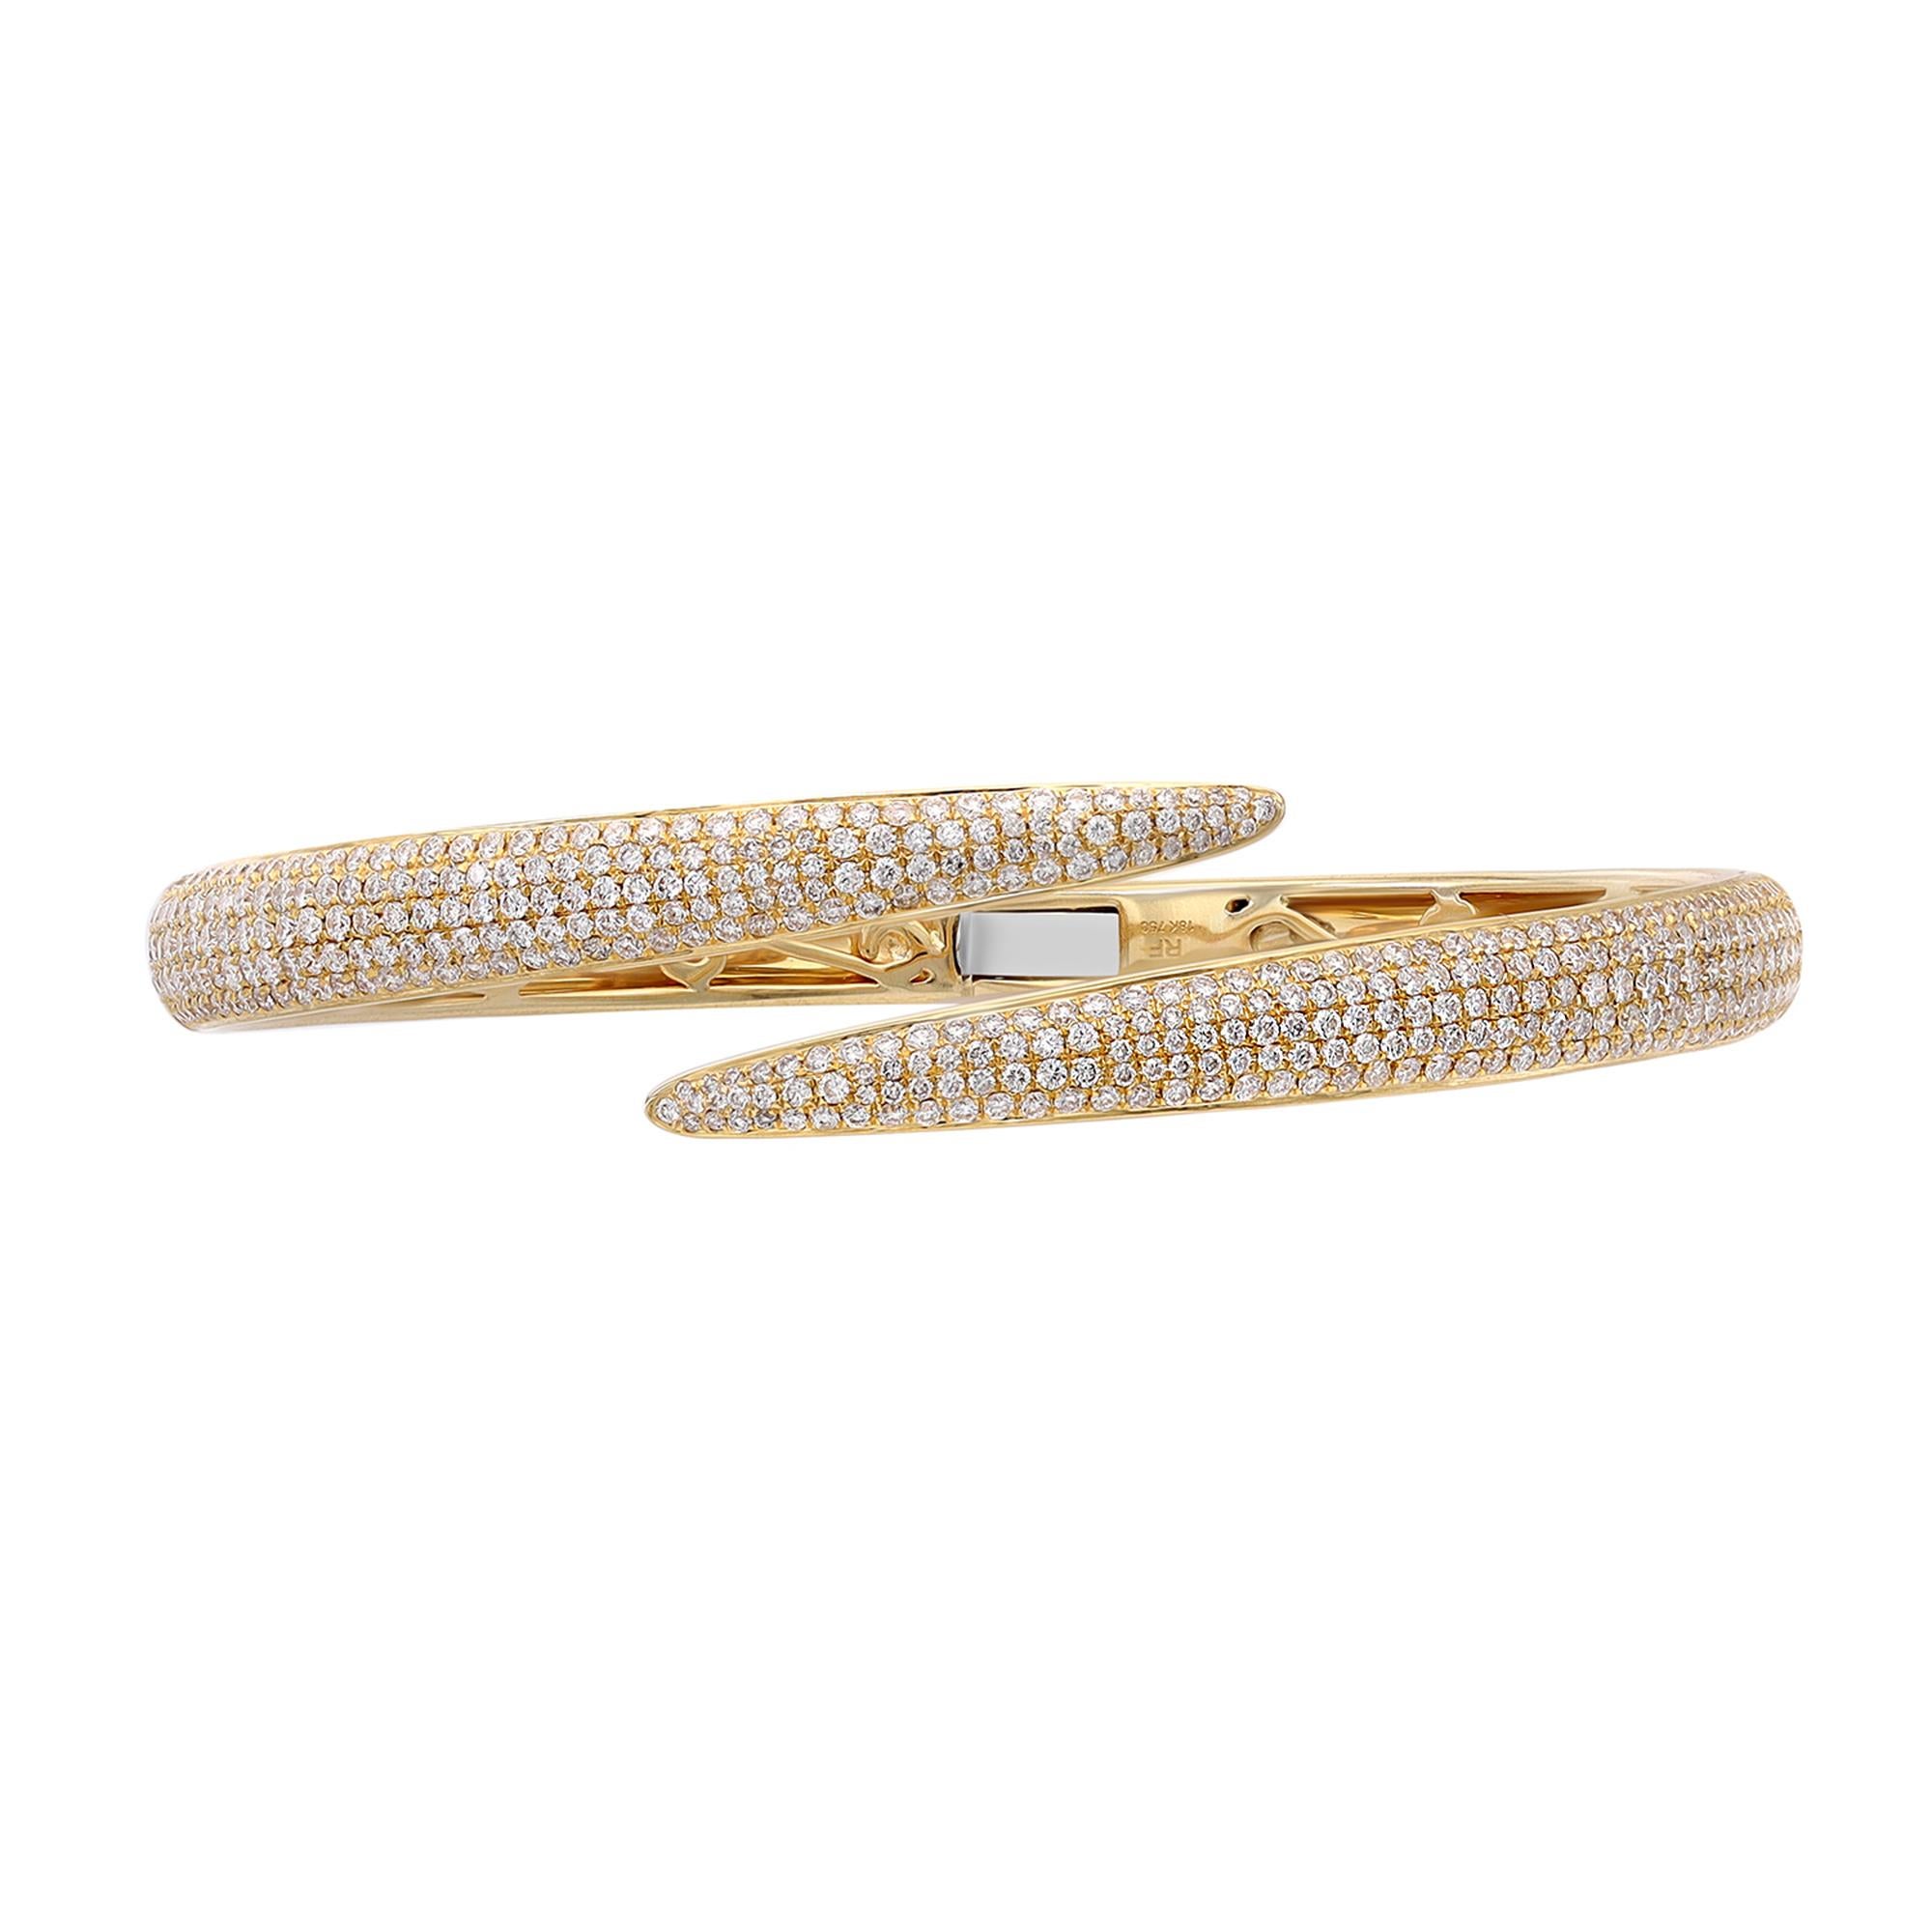 Ein klassischer Look mit schlichter Eleganz - dieser Diamantarmreif strahlt Raffinesse aus. Dieses atemberaubende Armband ist aus 18 Karat Gelbgold gefertigt und mit winzigen weißen, runden Diamanten mit einem Gesamtgewicht von 2,70 Karat besetzt.